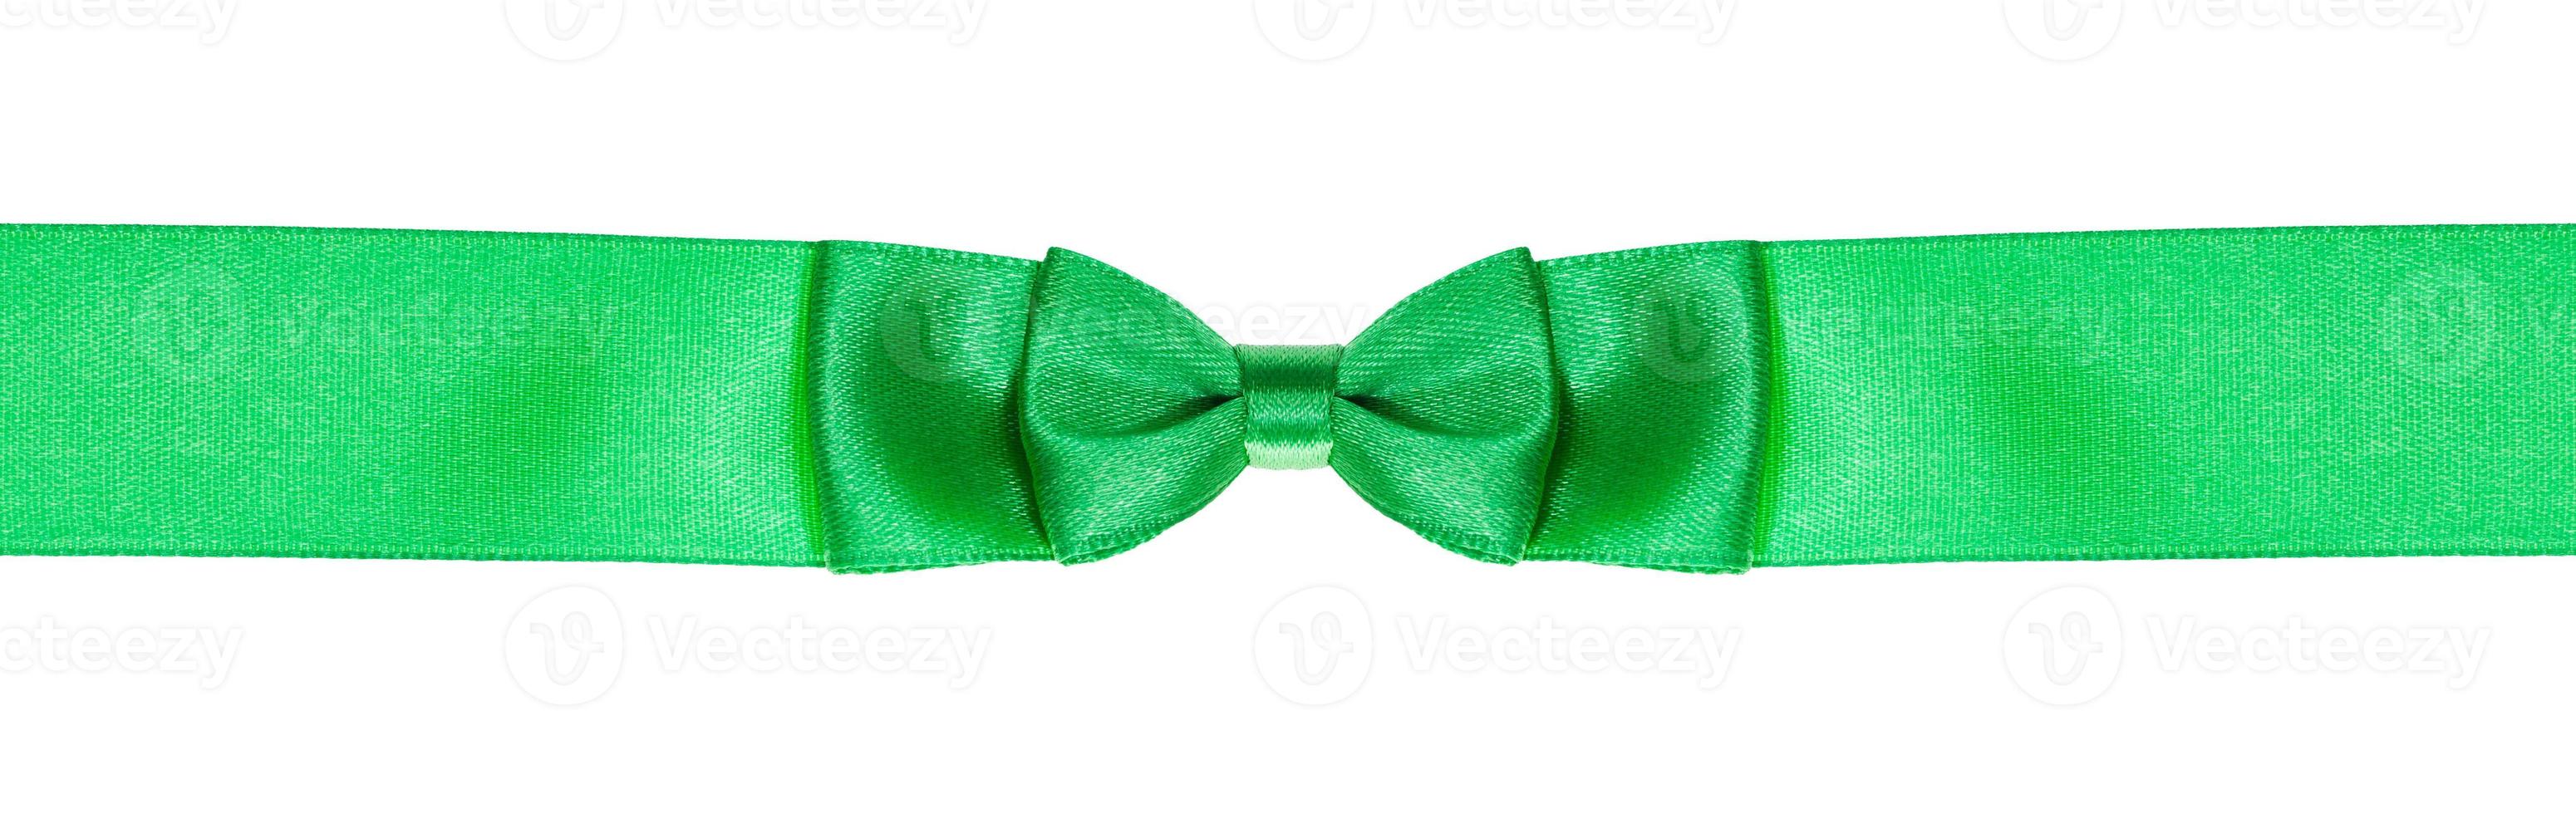 double bow knot on narrow green satin ribbon photo